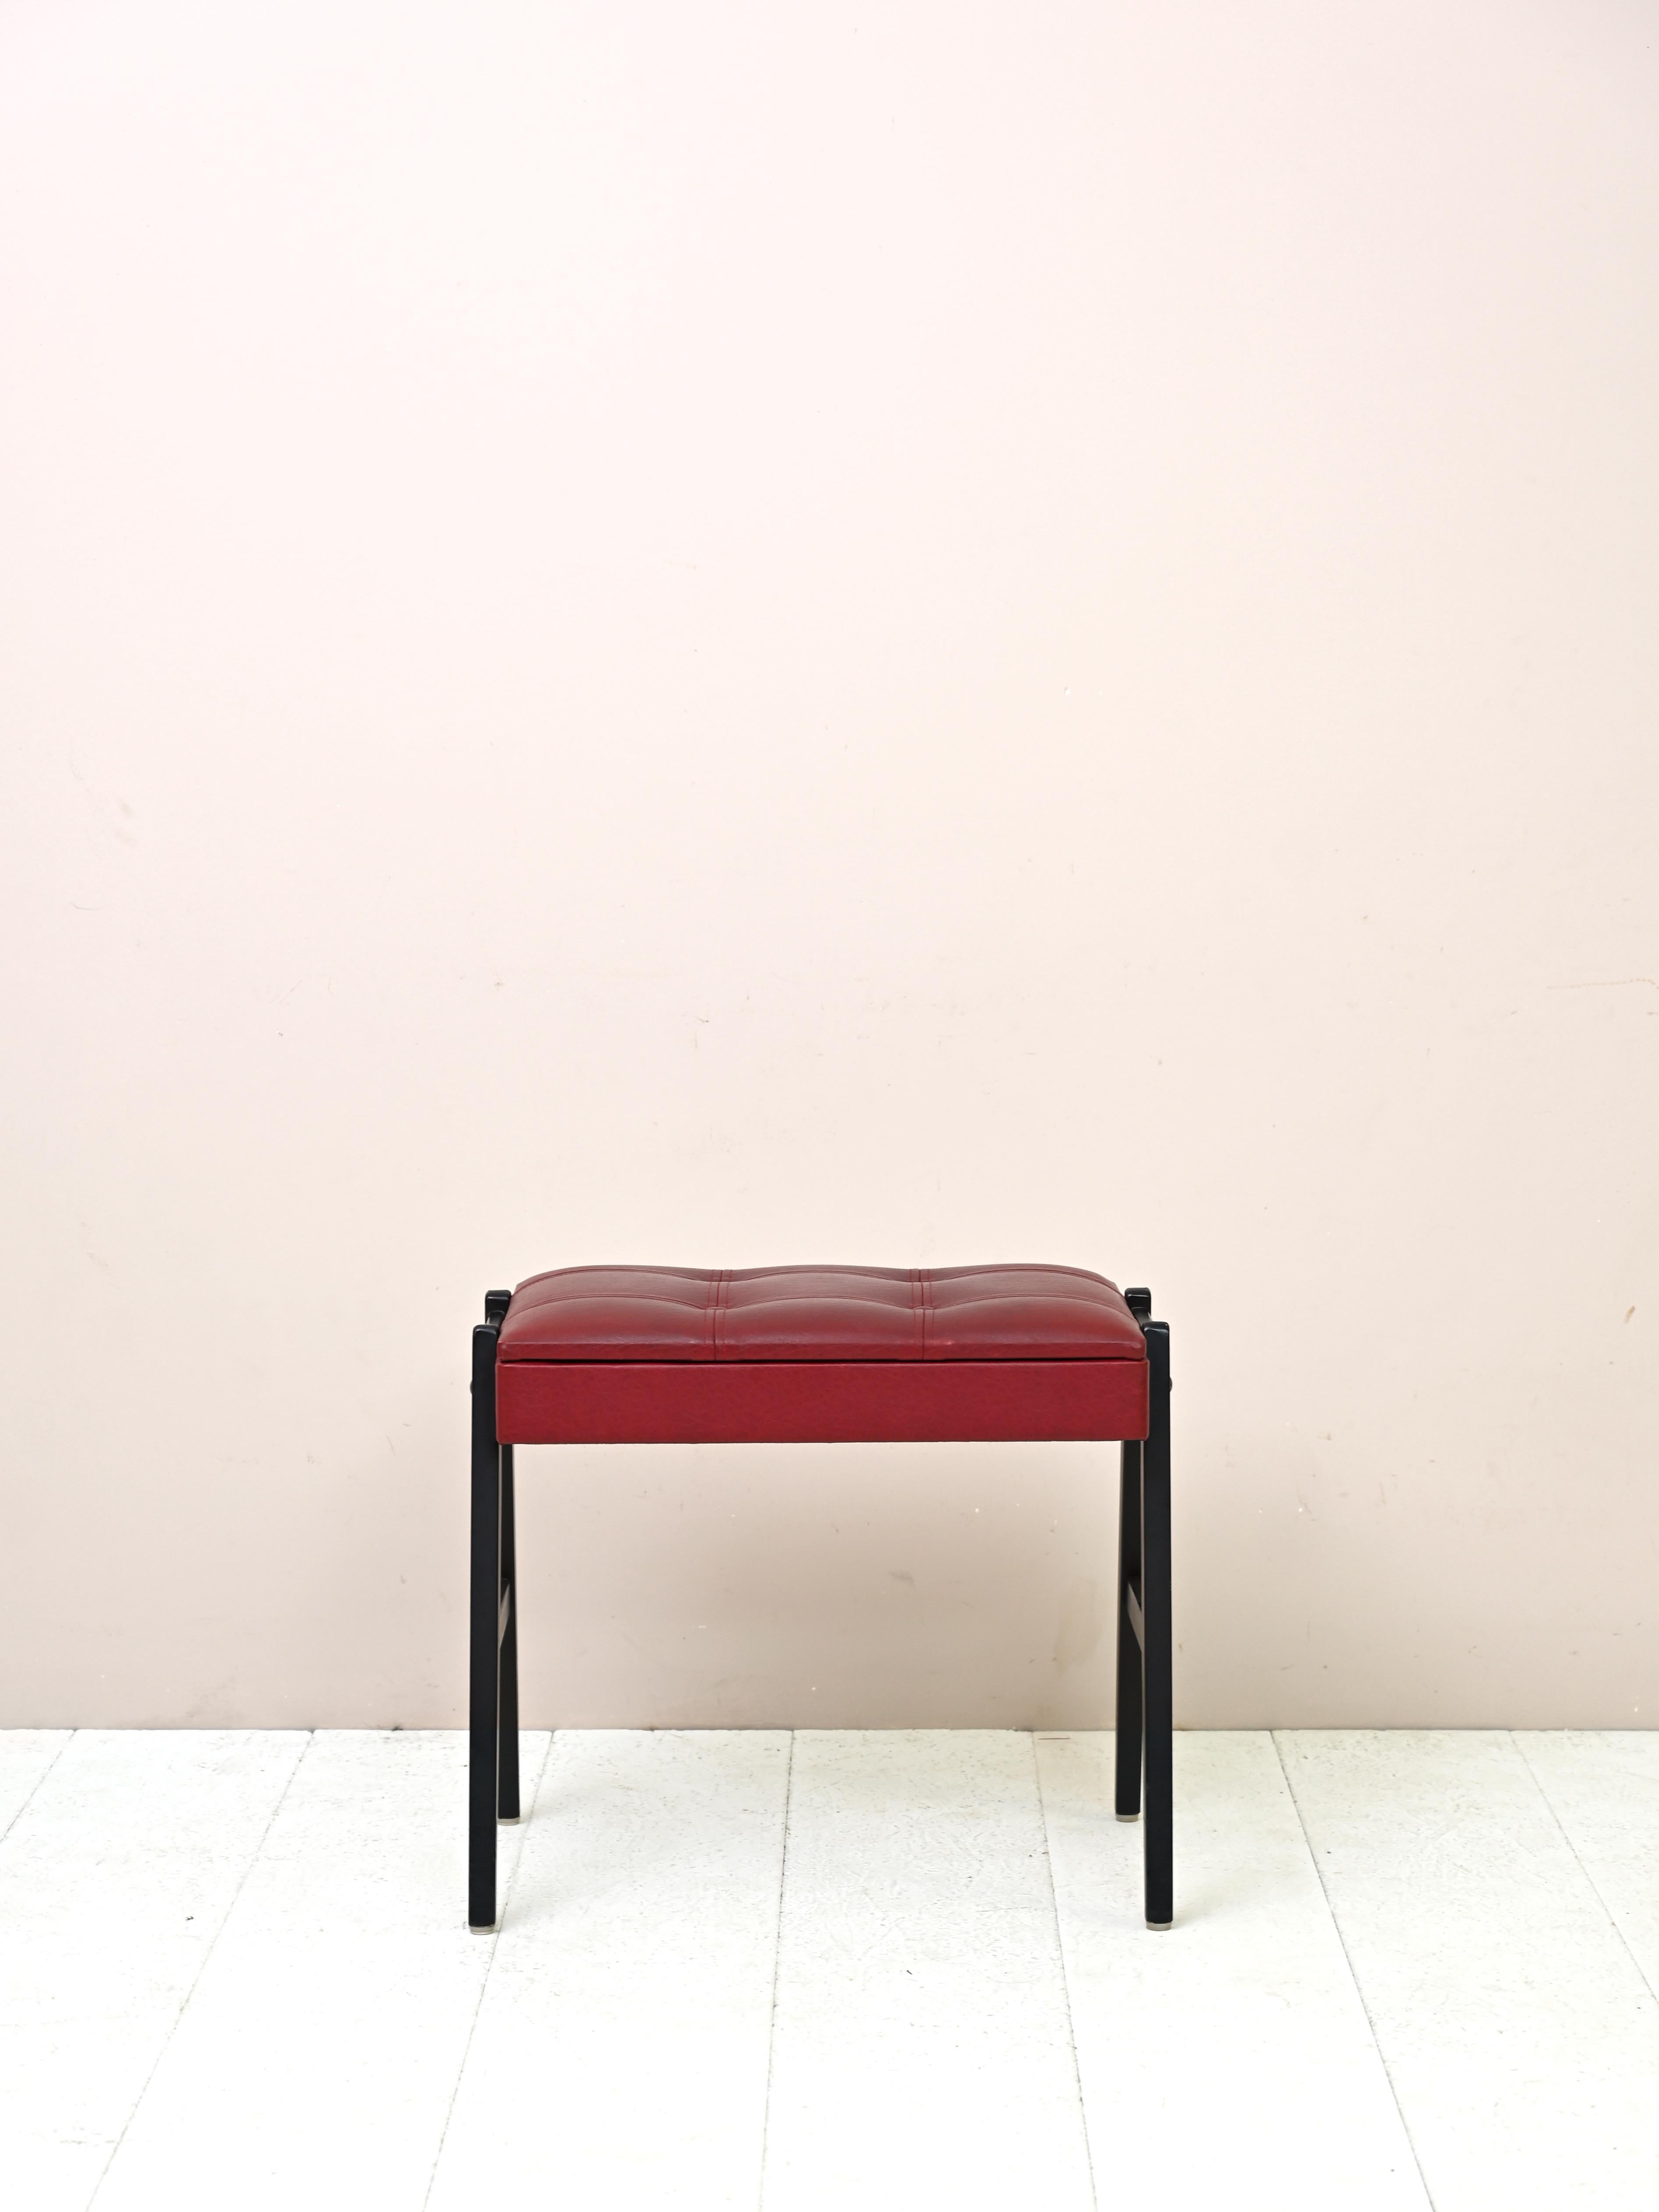 Tabouret scandinave en bois et cuir
Pratique pouf original des années 1960 avec un cadre en bois et un siège rembourré en similicuir.
rouge. Les pieds en bois sont peints en noir. Un petit compartiment de rangement est situé sous le siège.

Bon